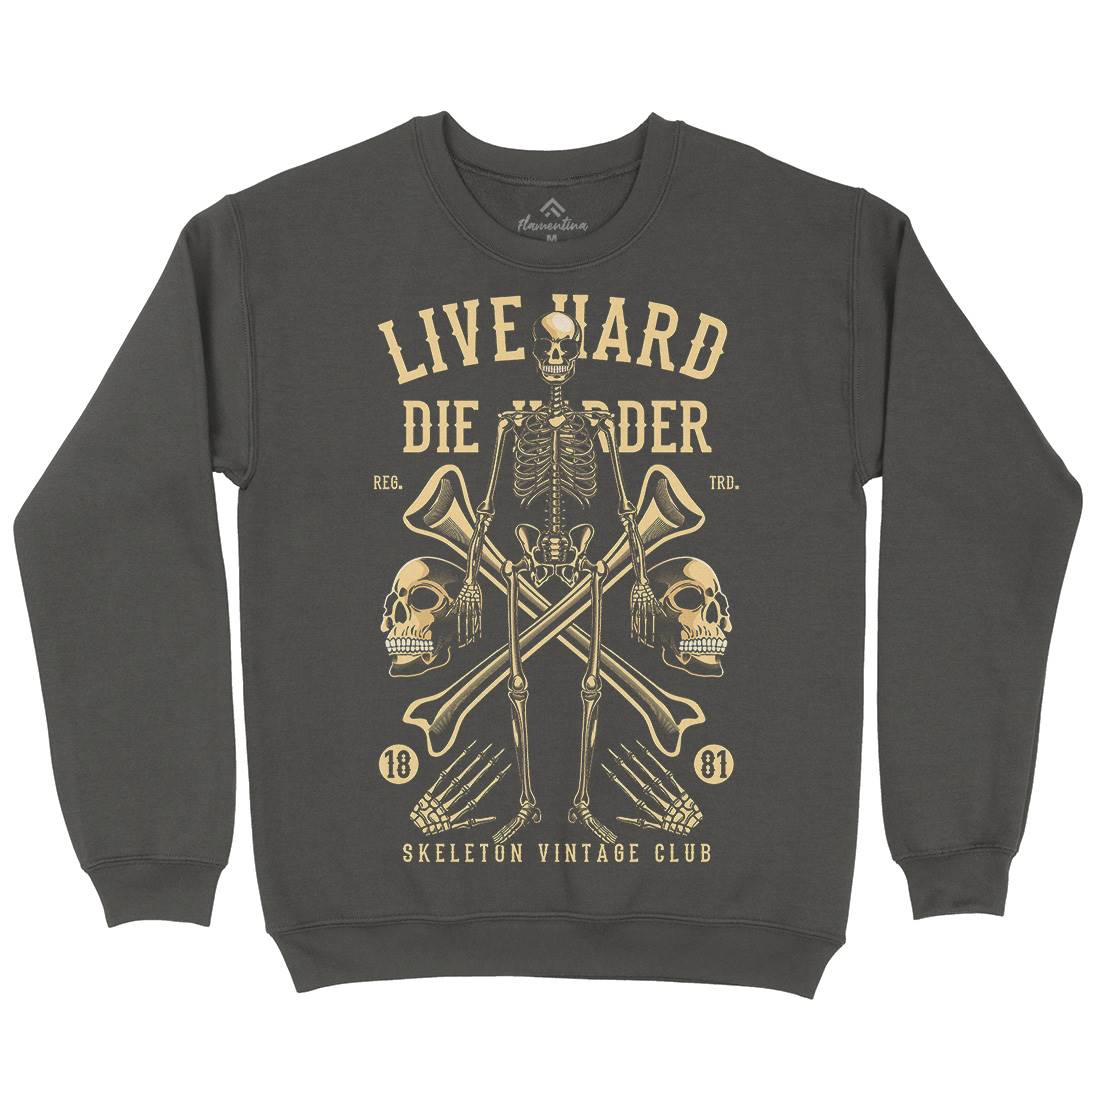 Live Hard Die Harder Kids Crew Neck Sweatshirt Retro C387